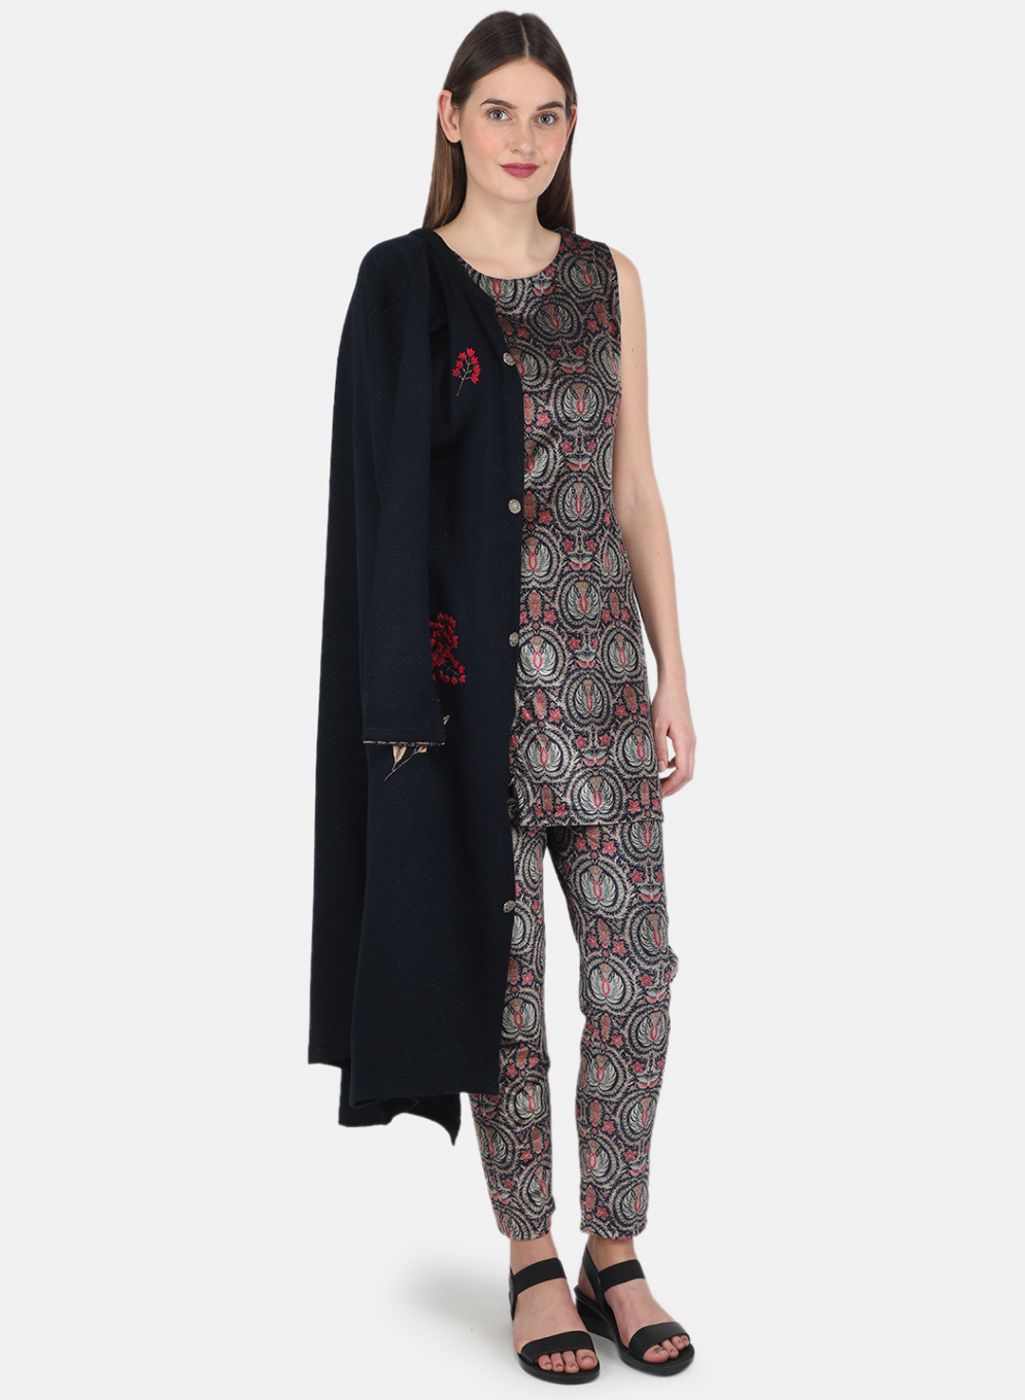 lymi urban designer festive wear rayon kurti collection with ruby silk shrug  full catalog - SM CREATION